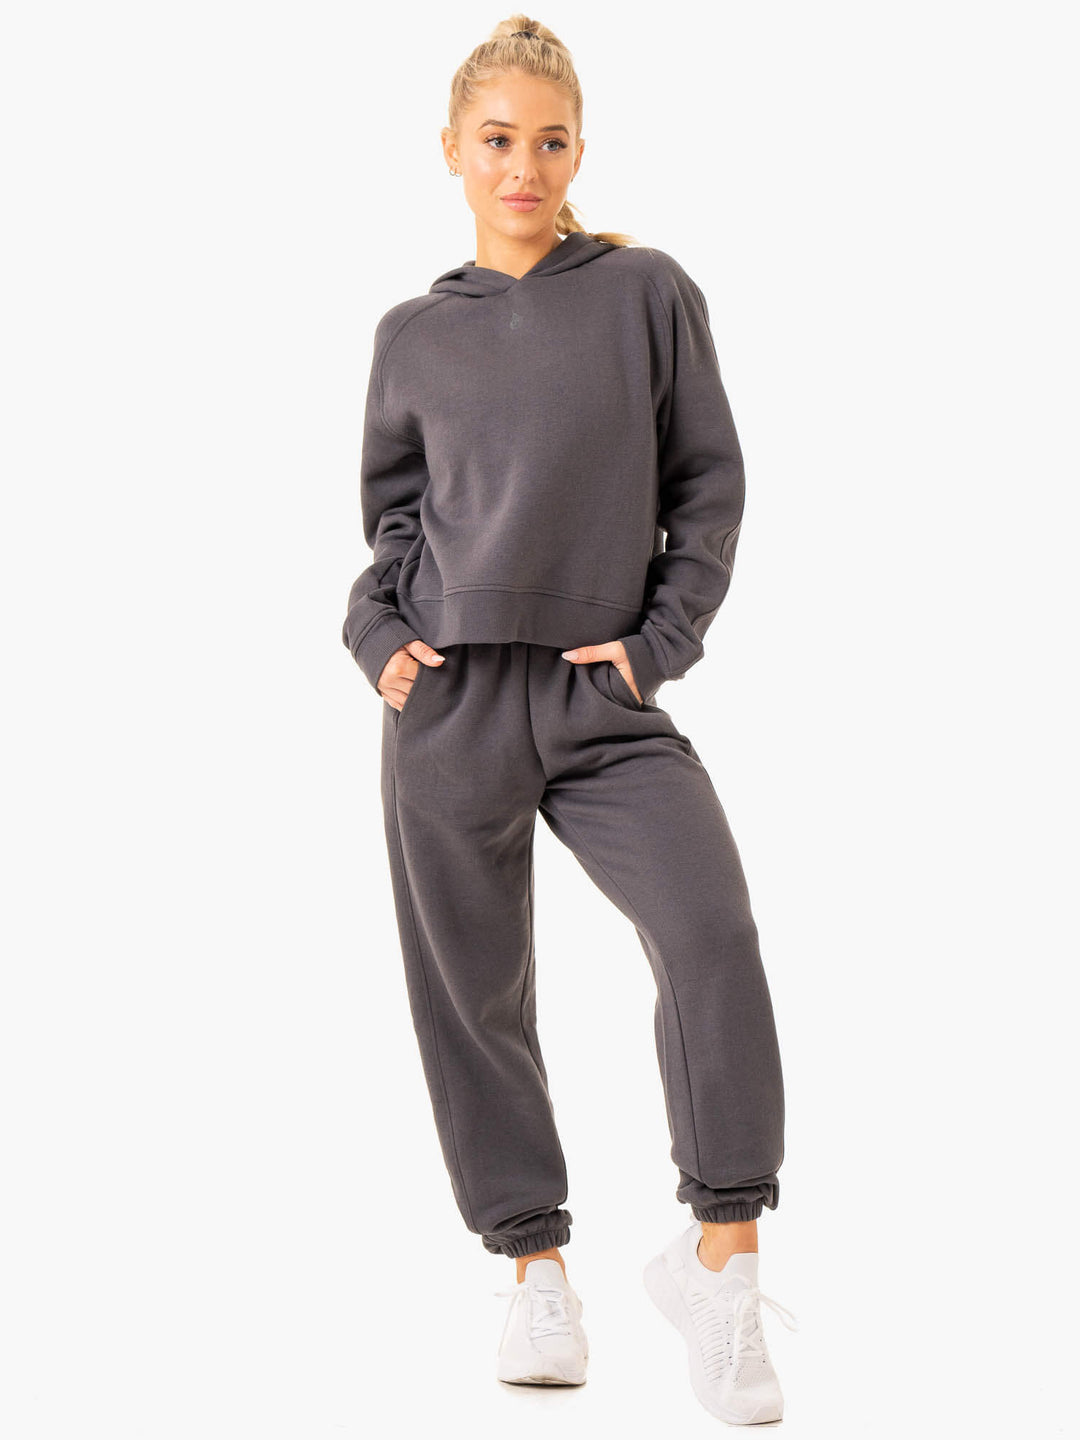 Sideline Hoodie - Charcoal Clothing Ryderwear 